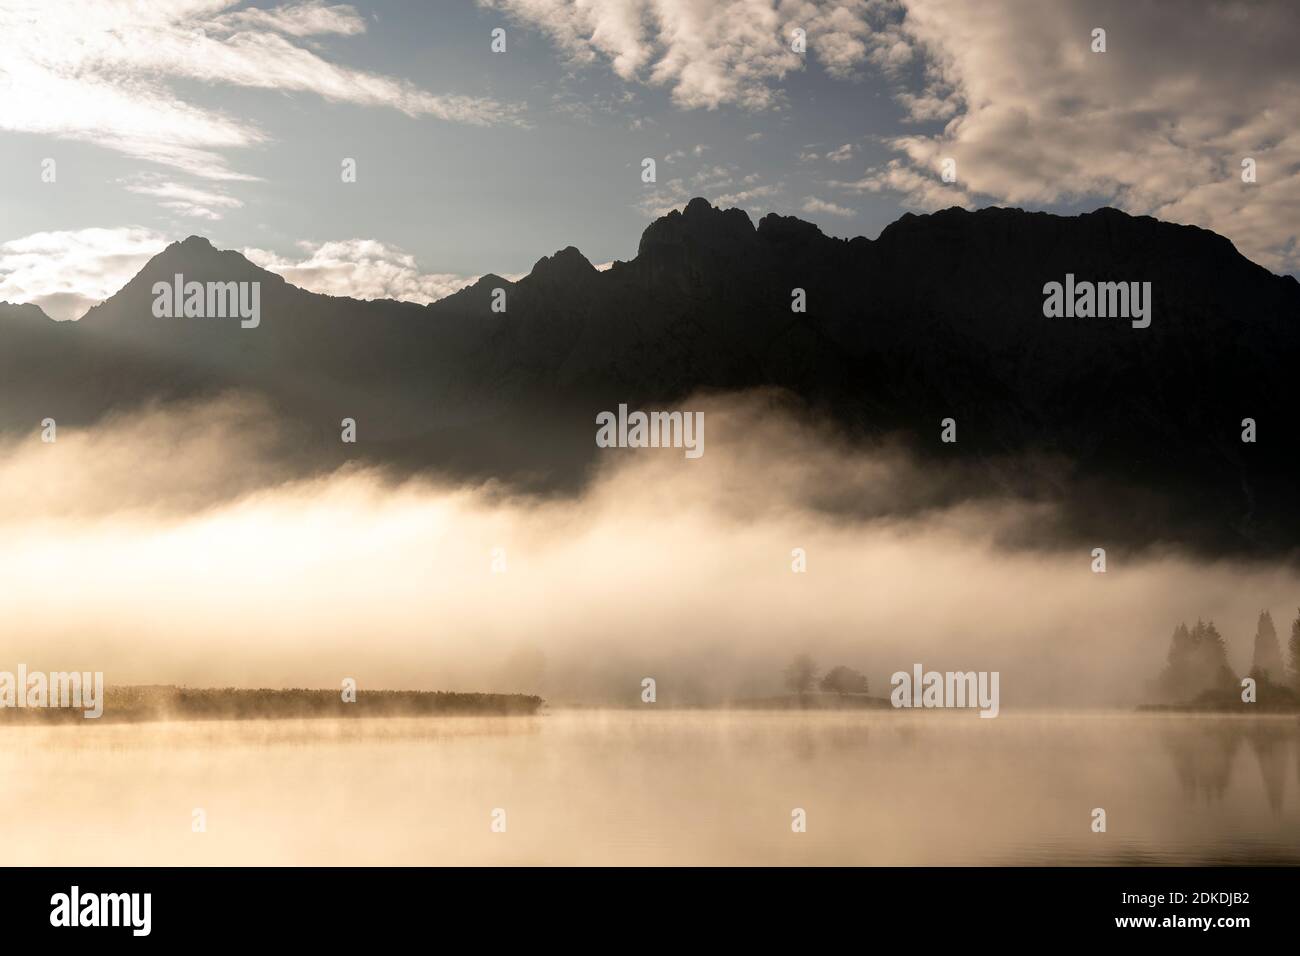 Herbststimmung an einem kleinen See in den bayerischen Alpen, im Hintergrund das Karwendelgebirge, eine kleine Halbinsel im Nebel und die Spiegelung im Wasser. Die neblige Atmosphäre mit den zerklüfteten Bergen hat eine fast mystische Wirkung. Stockfoto